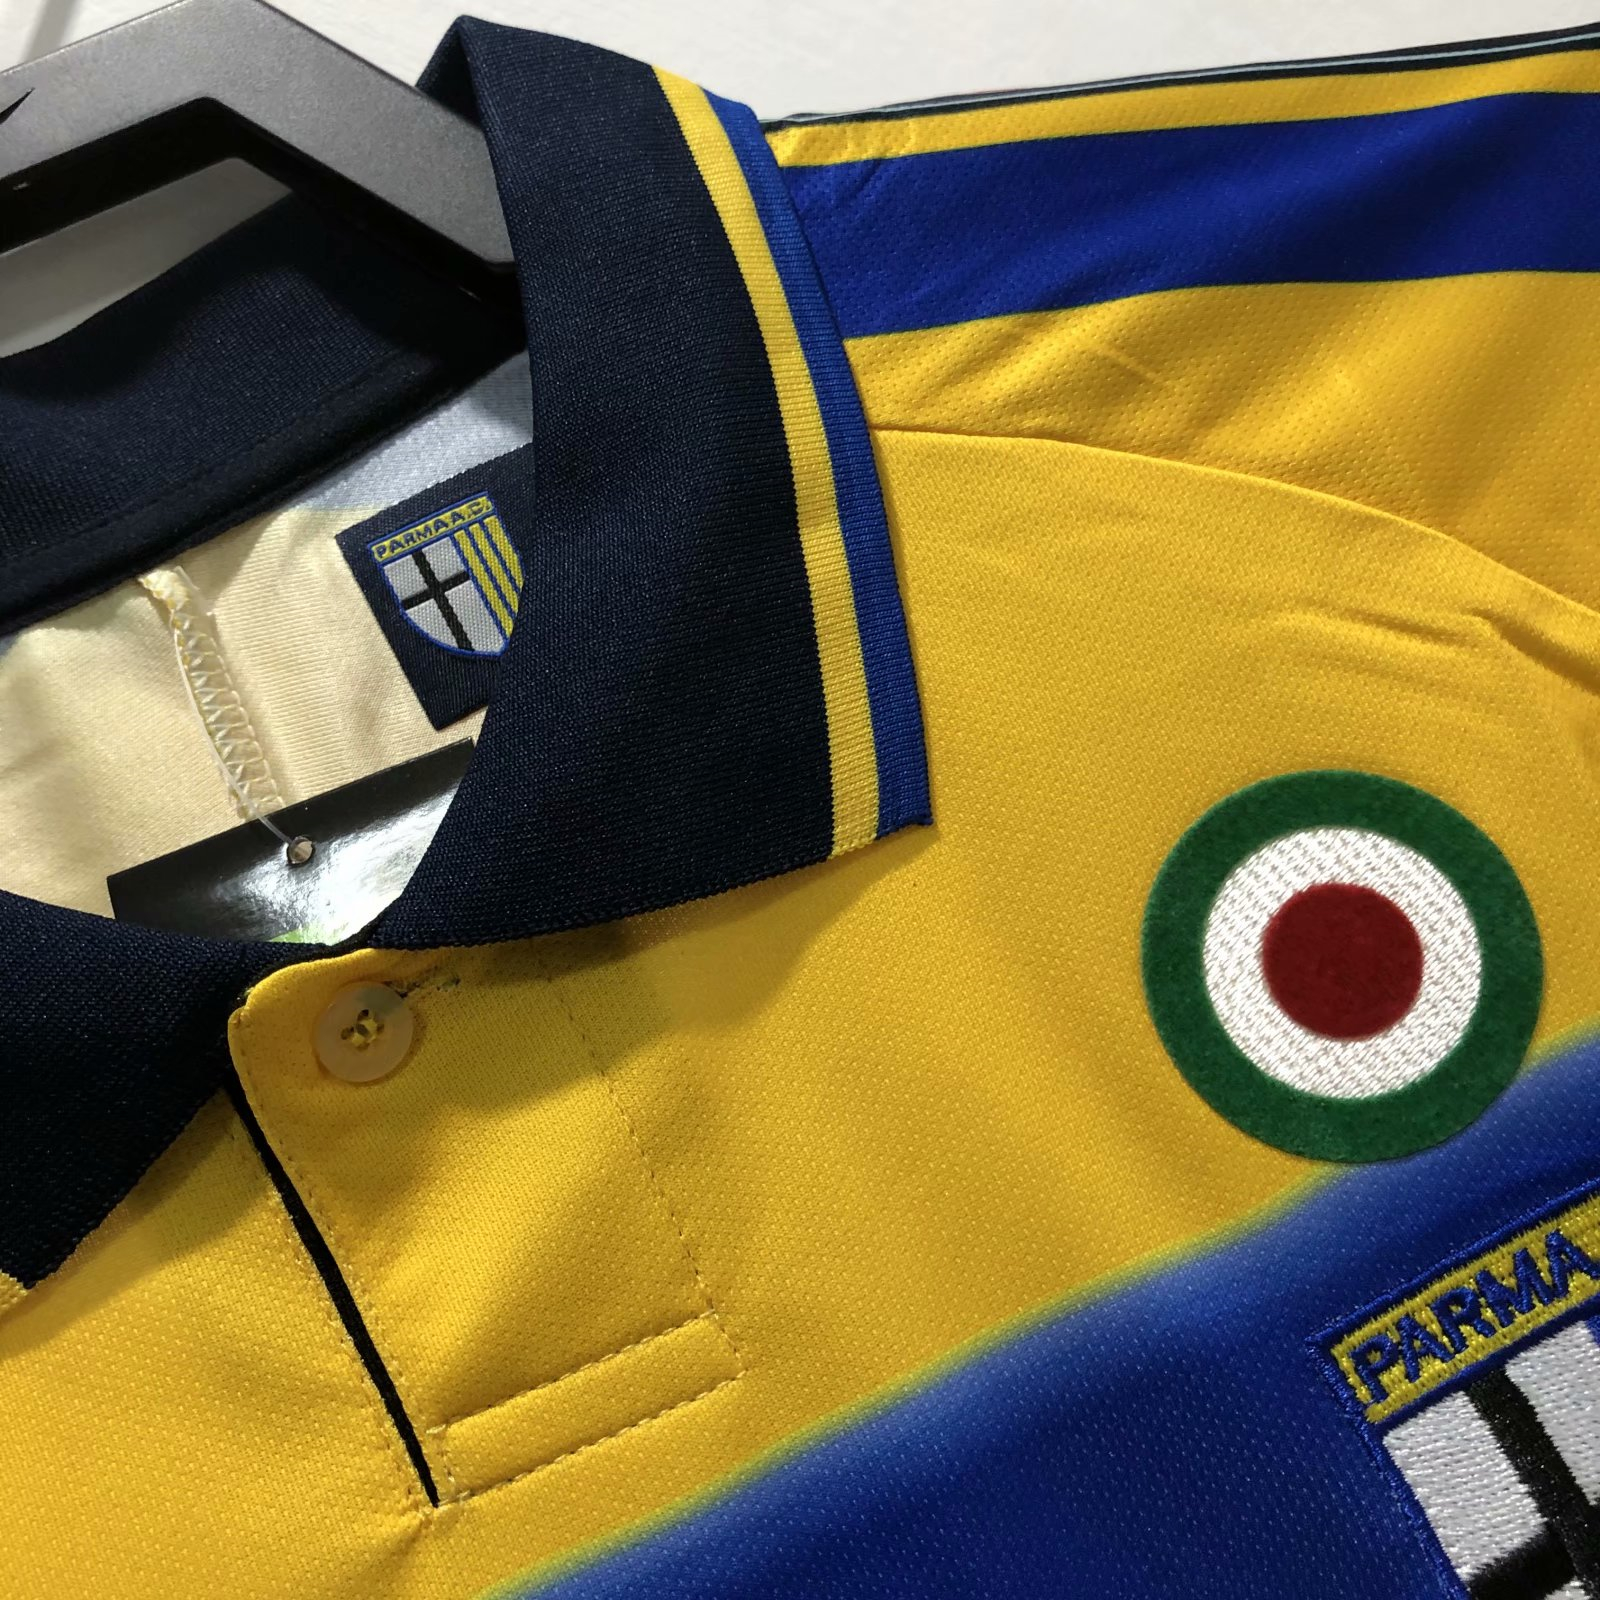 1999-2000 Parma Calcio Retro Home Mens Soccer Jersey Replica 